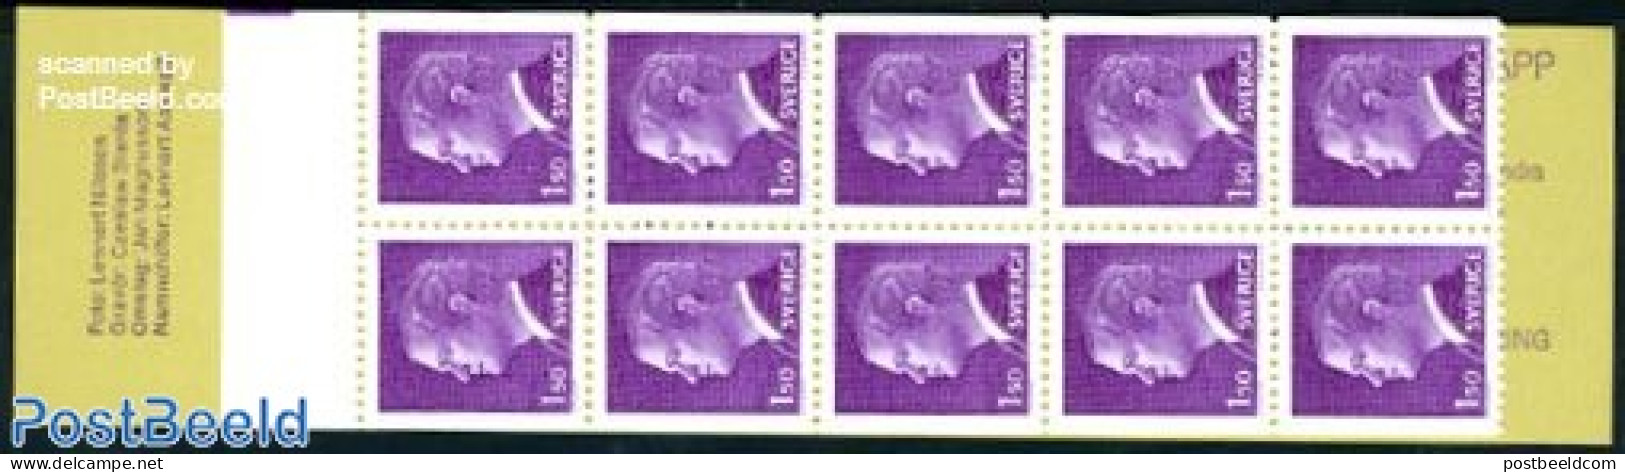 Sweden 1980 Definitives Booklet, Mint NH, Stamp Booklets - Ongebruikt